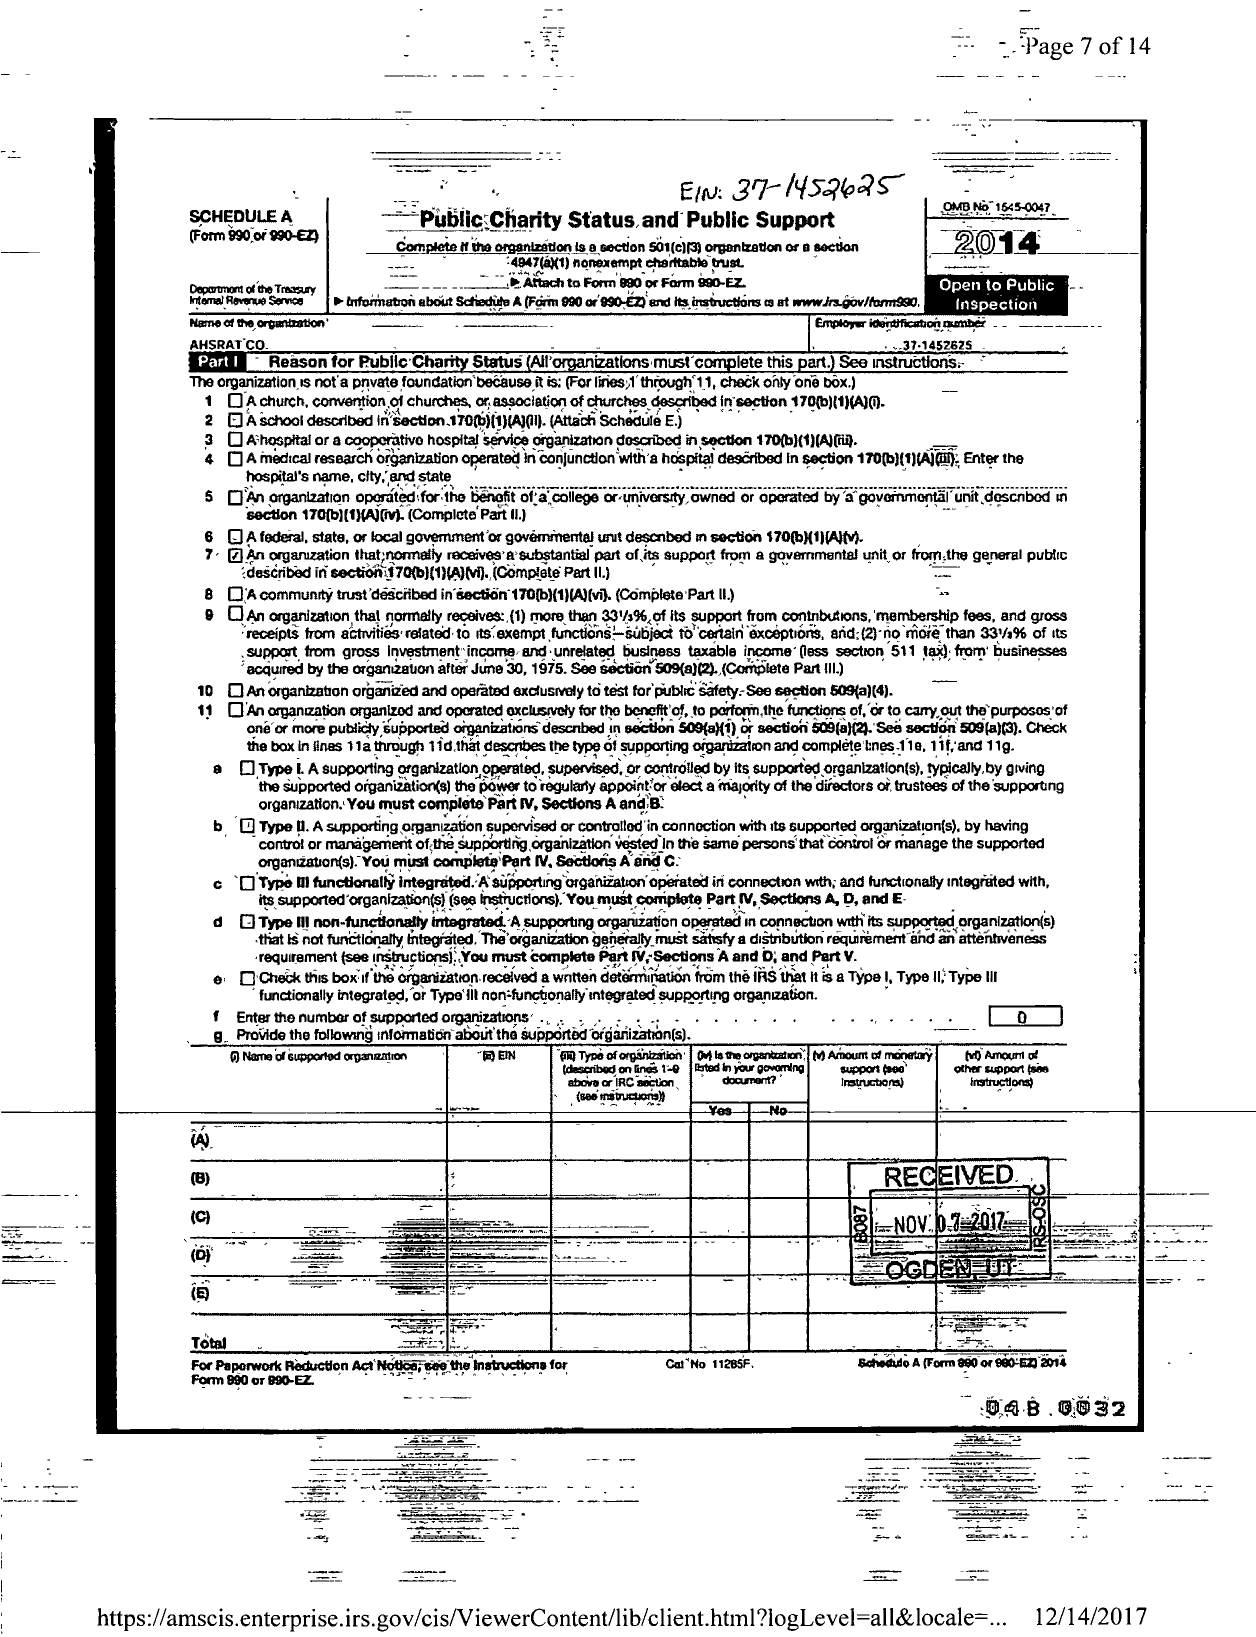 Image of first page of 2014 Form 990ER for Ashrat